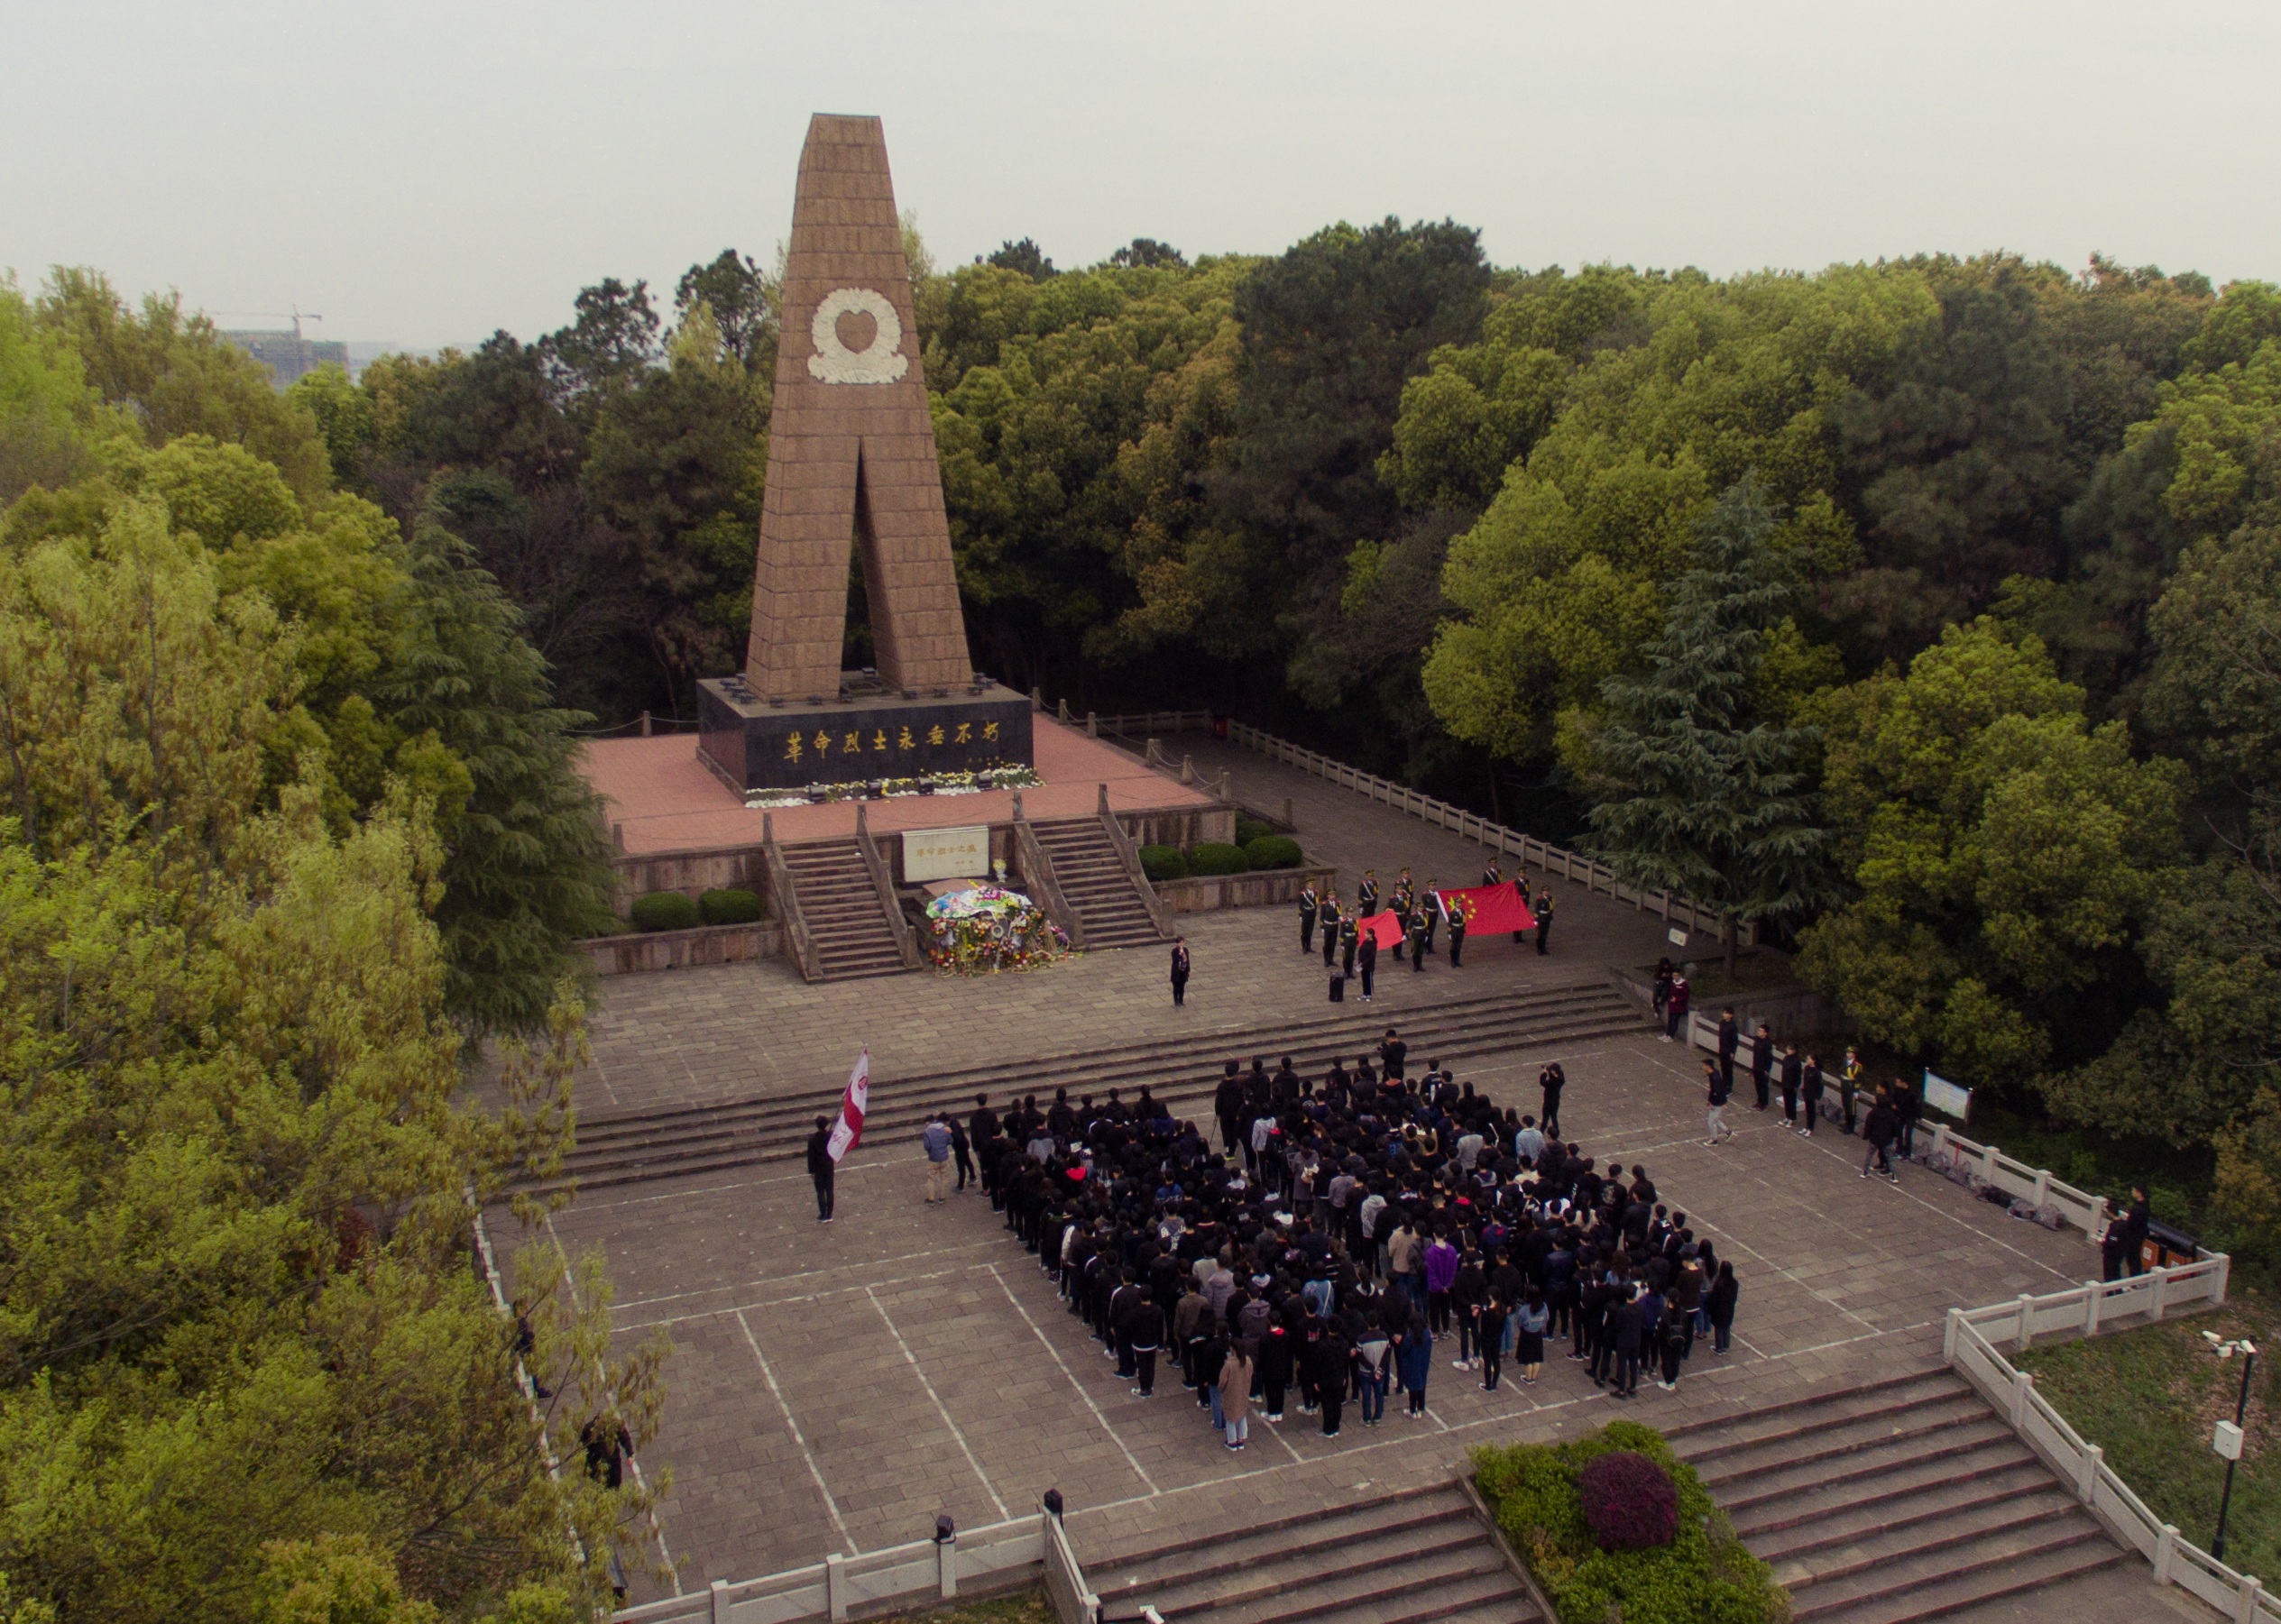 工学院组织学生代表赴大蜀山烈士陵园祭奠英烈-安徽农业大学工学院